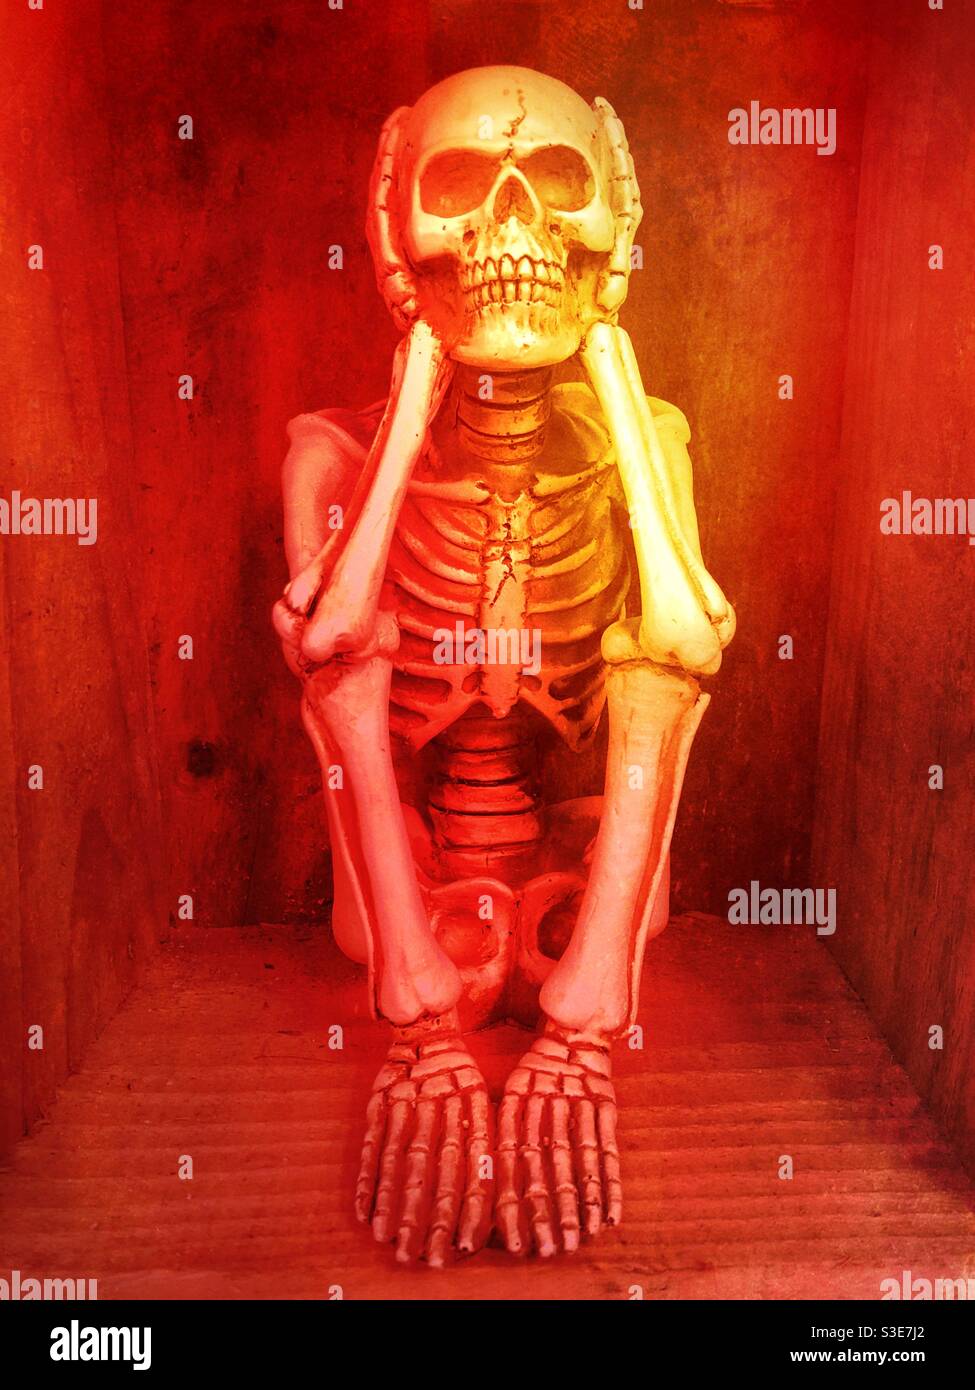 Un squelette humain dans un feu rouge inferno Enfer Banque D'Images